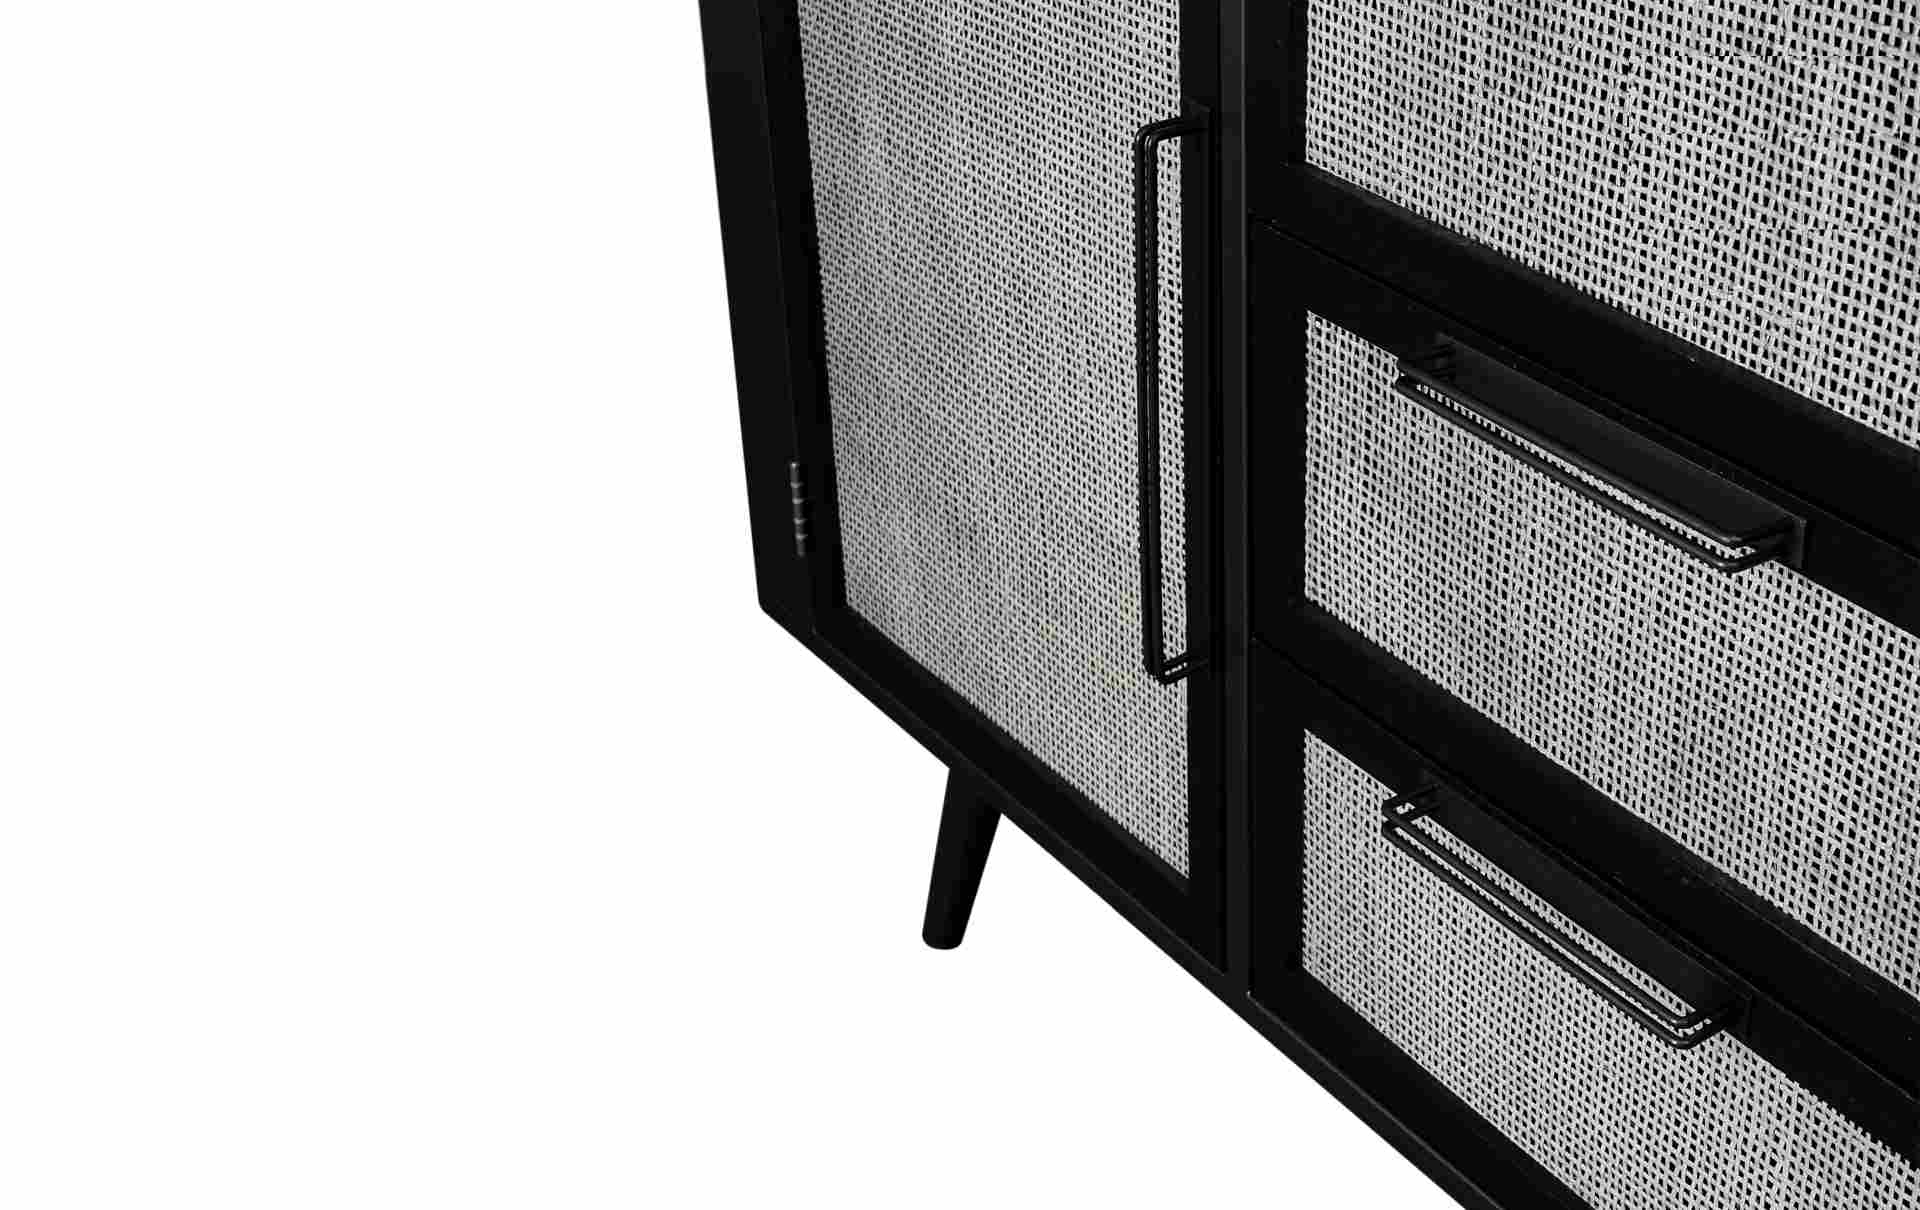 Das Sideboard Nordic Mindi Rattan überzeugt mit seinem Industriellen Design. Gefertigt wurde es aus Rattan und Mindi Holz, welches einen schwarzen Farbton besitzt. Das Gestell ist aus Metall und hat eine schwarze Farbe. Das Sideboard verfügt über zwei Tür